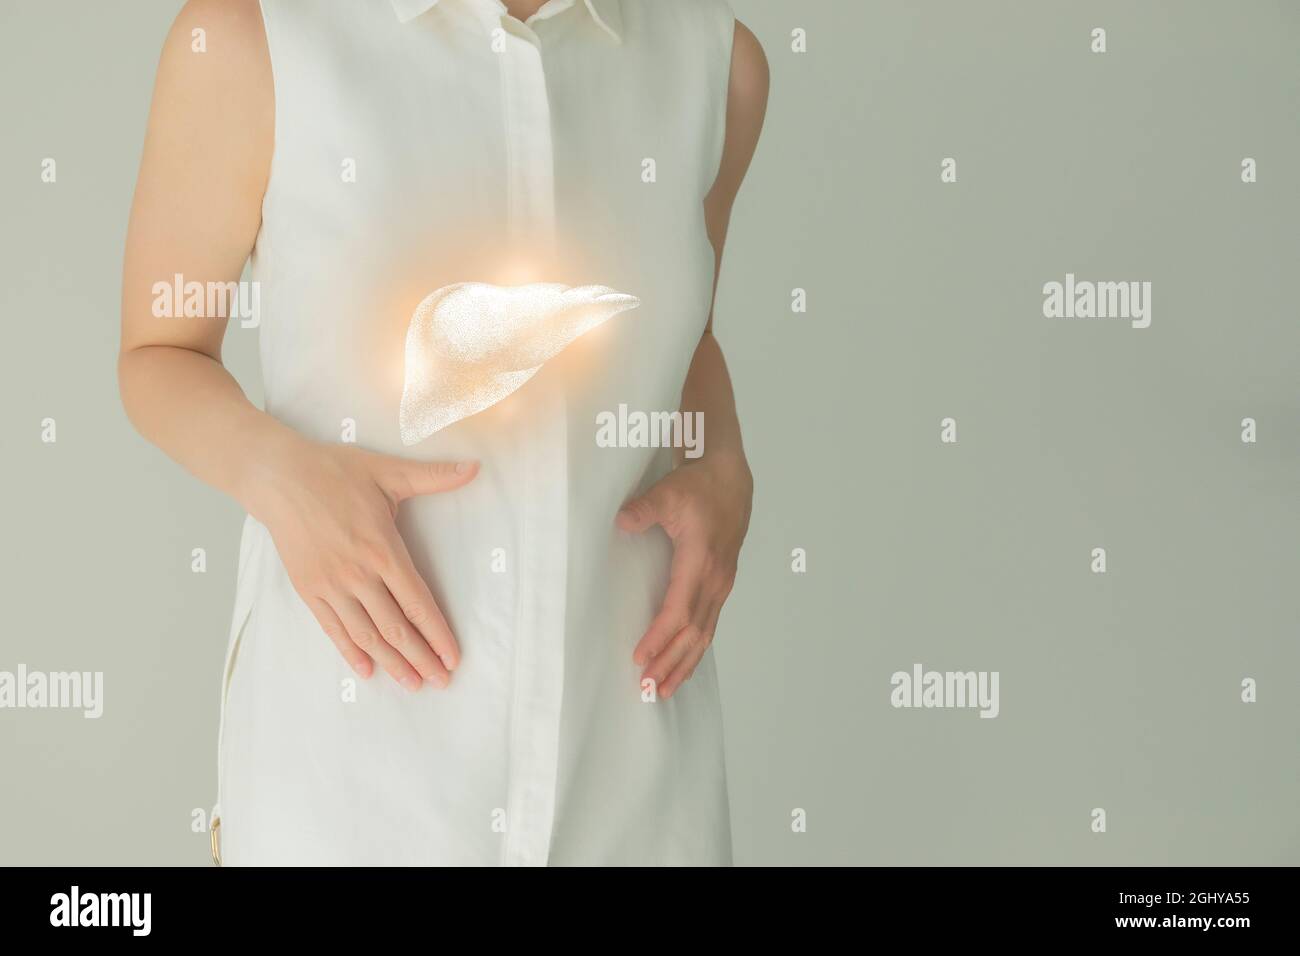 Paziente femminile irriconoscibile in abiti bianchi, evidenziato fegato di mano nelle mani. Concetto di problemi del sistema digestivo umano. Foto Stock